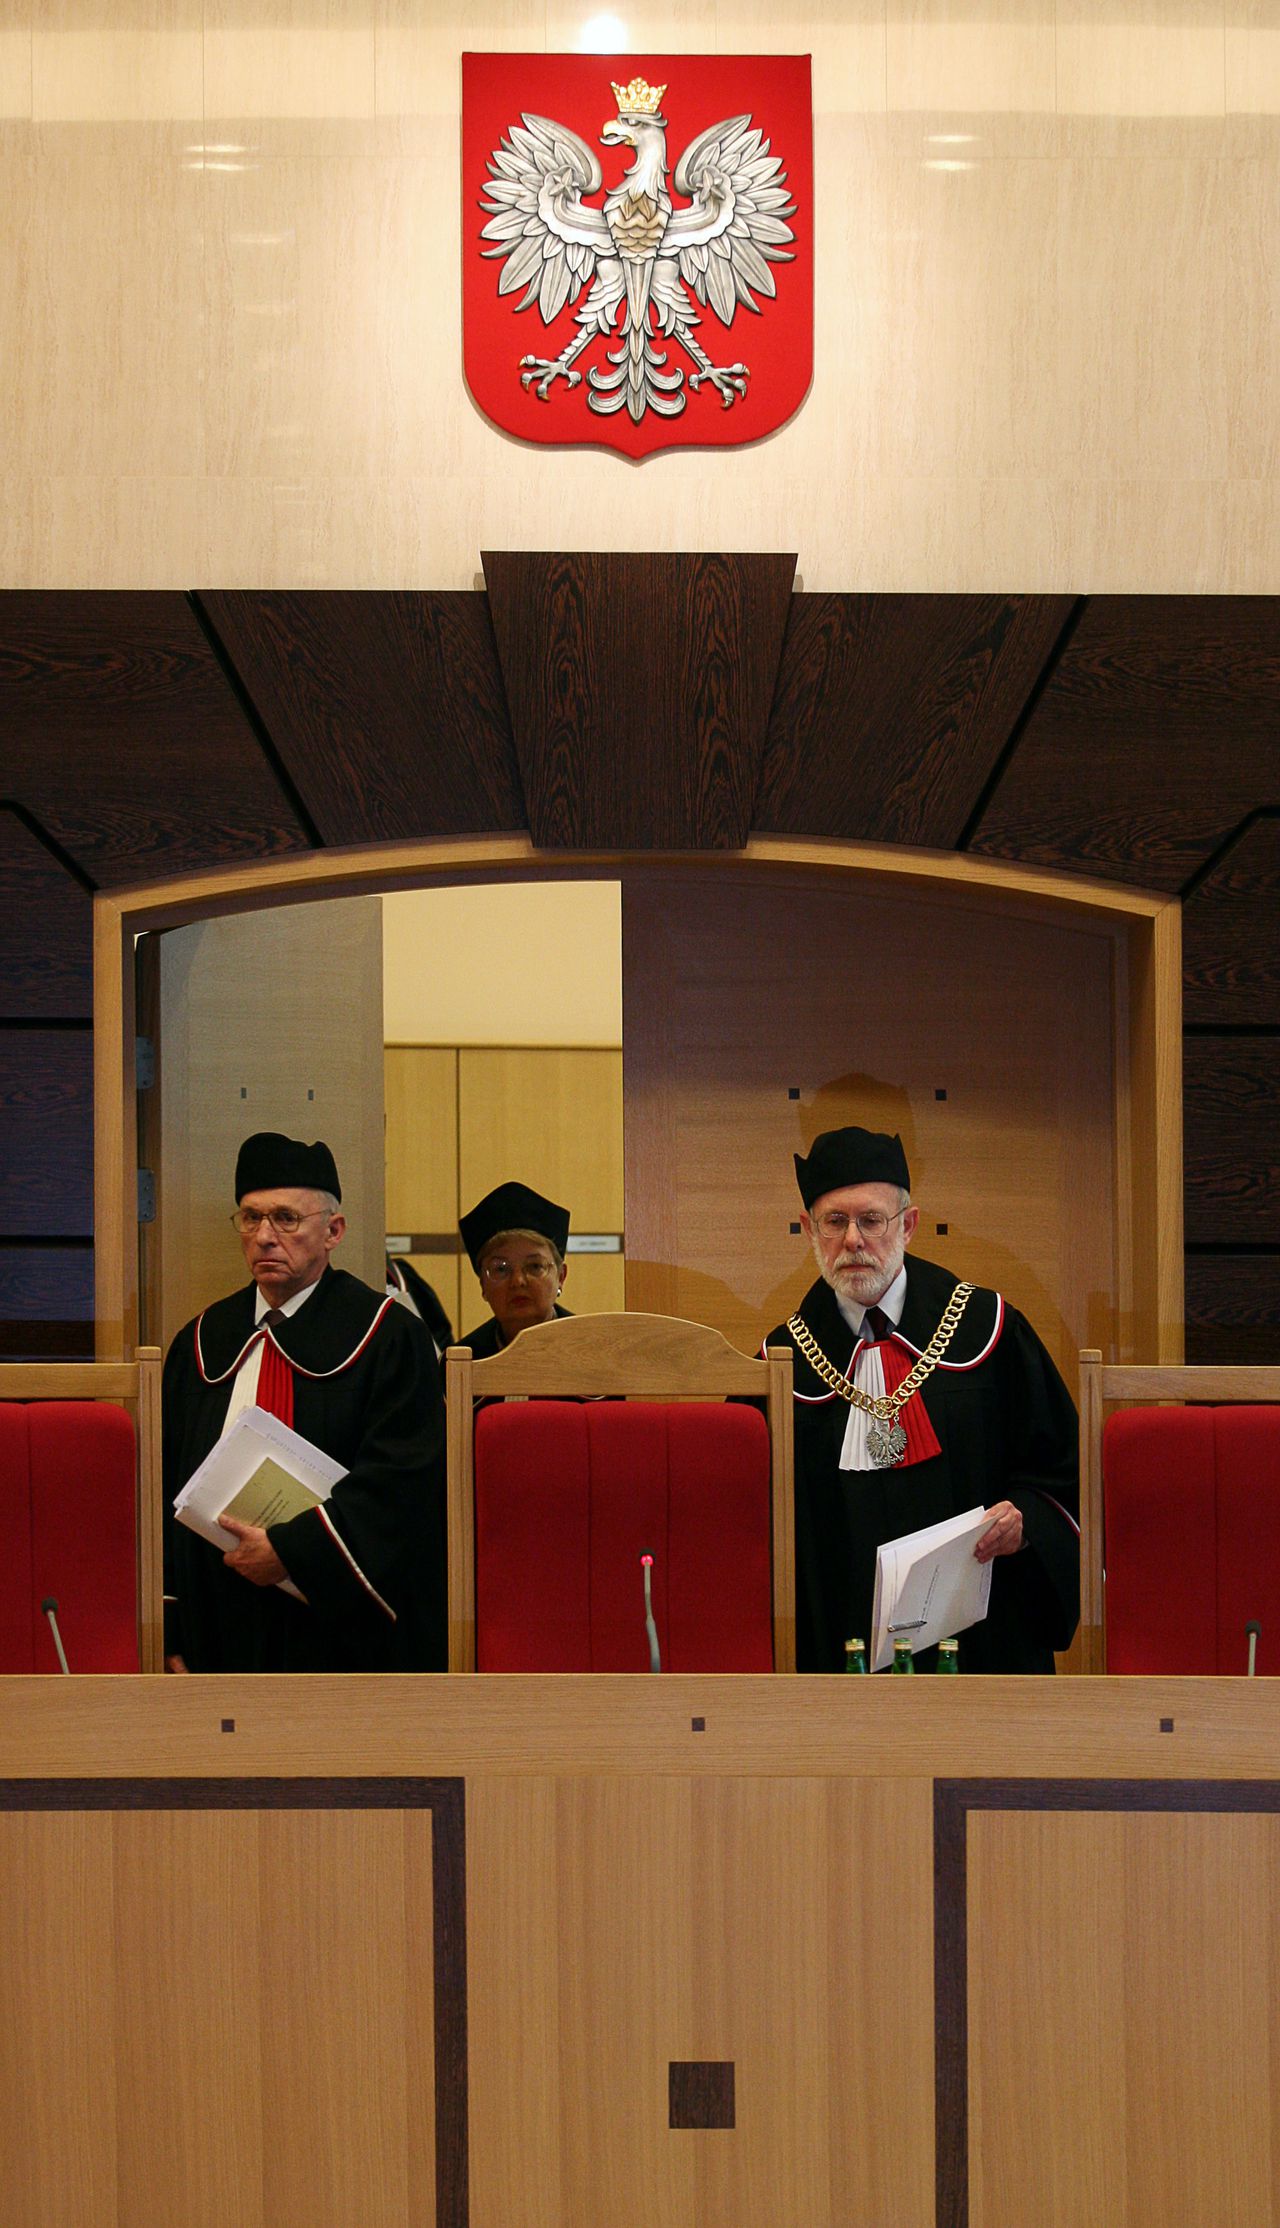 Rechters van het Poolse Constitutionele Hof komen de rechtszaal binnen.